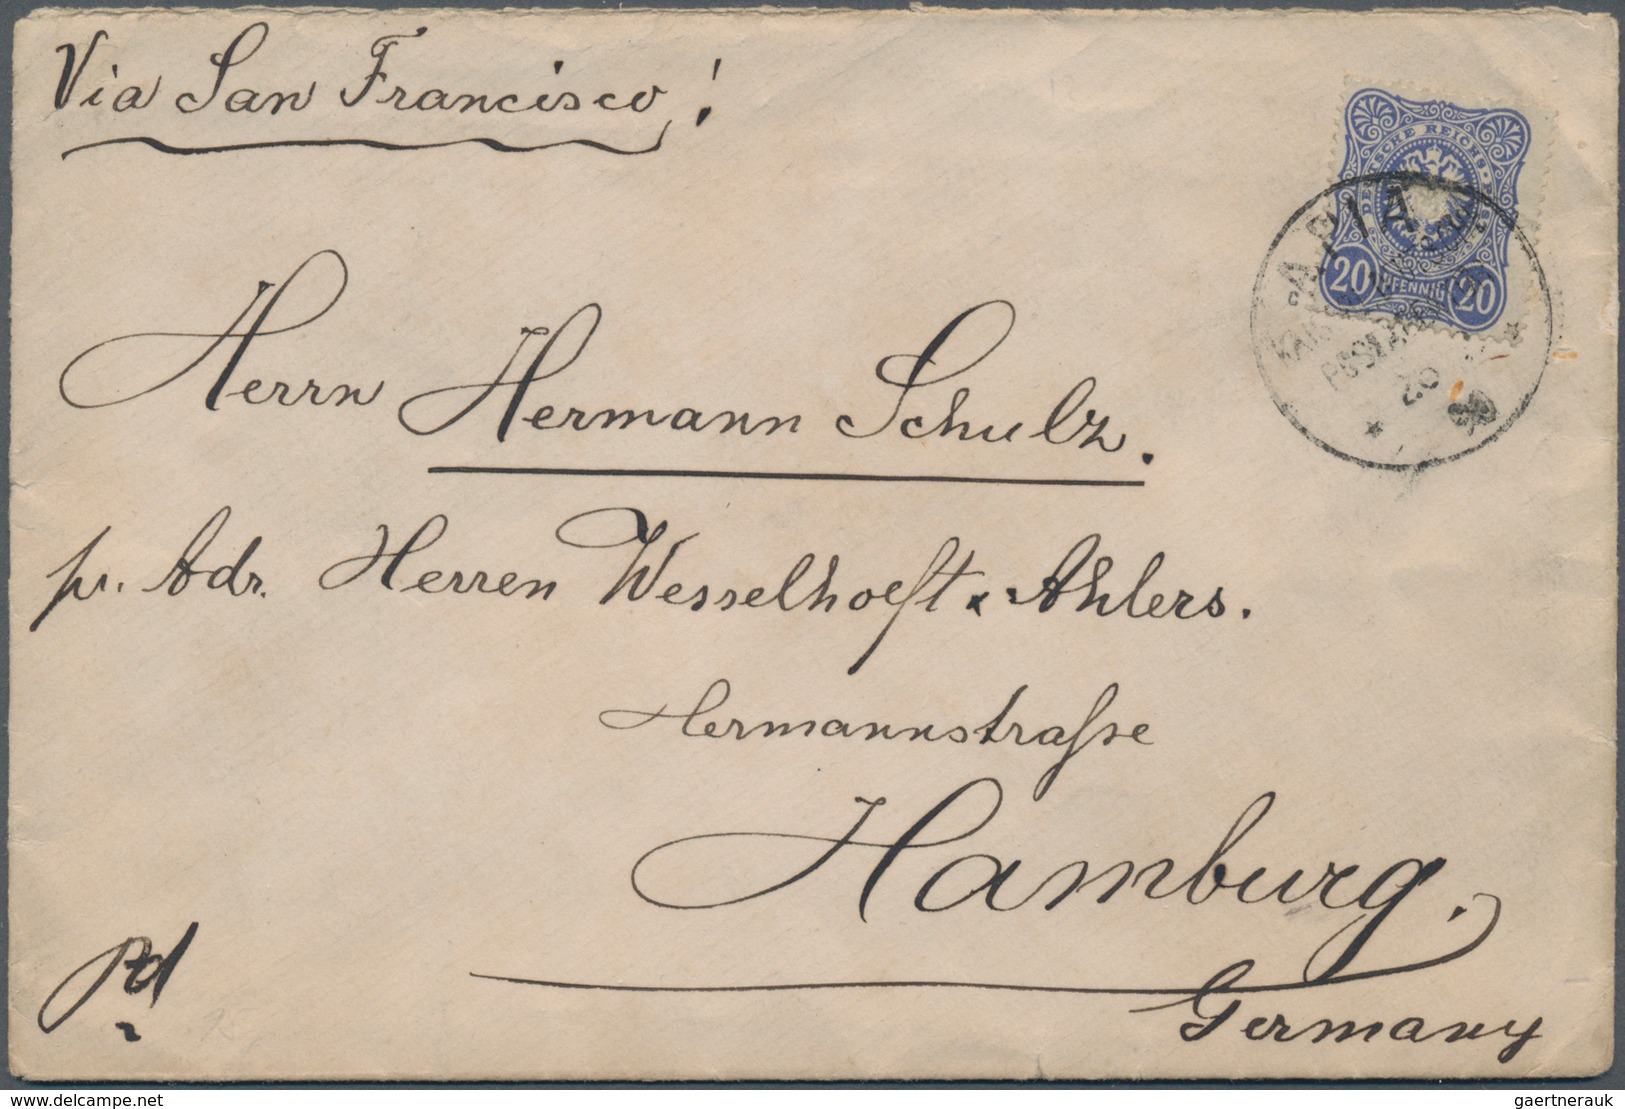 Deutsche Kolonien - Samoa: 1887/1913, Sammlungsbestand mit interessantem Vorläuferteil (u.a. Postdam